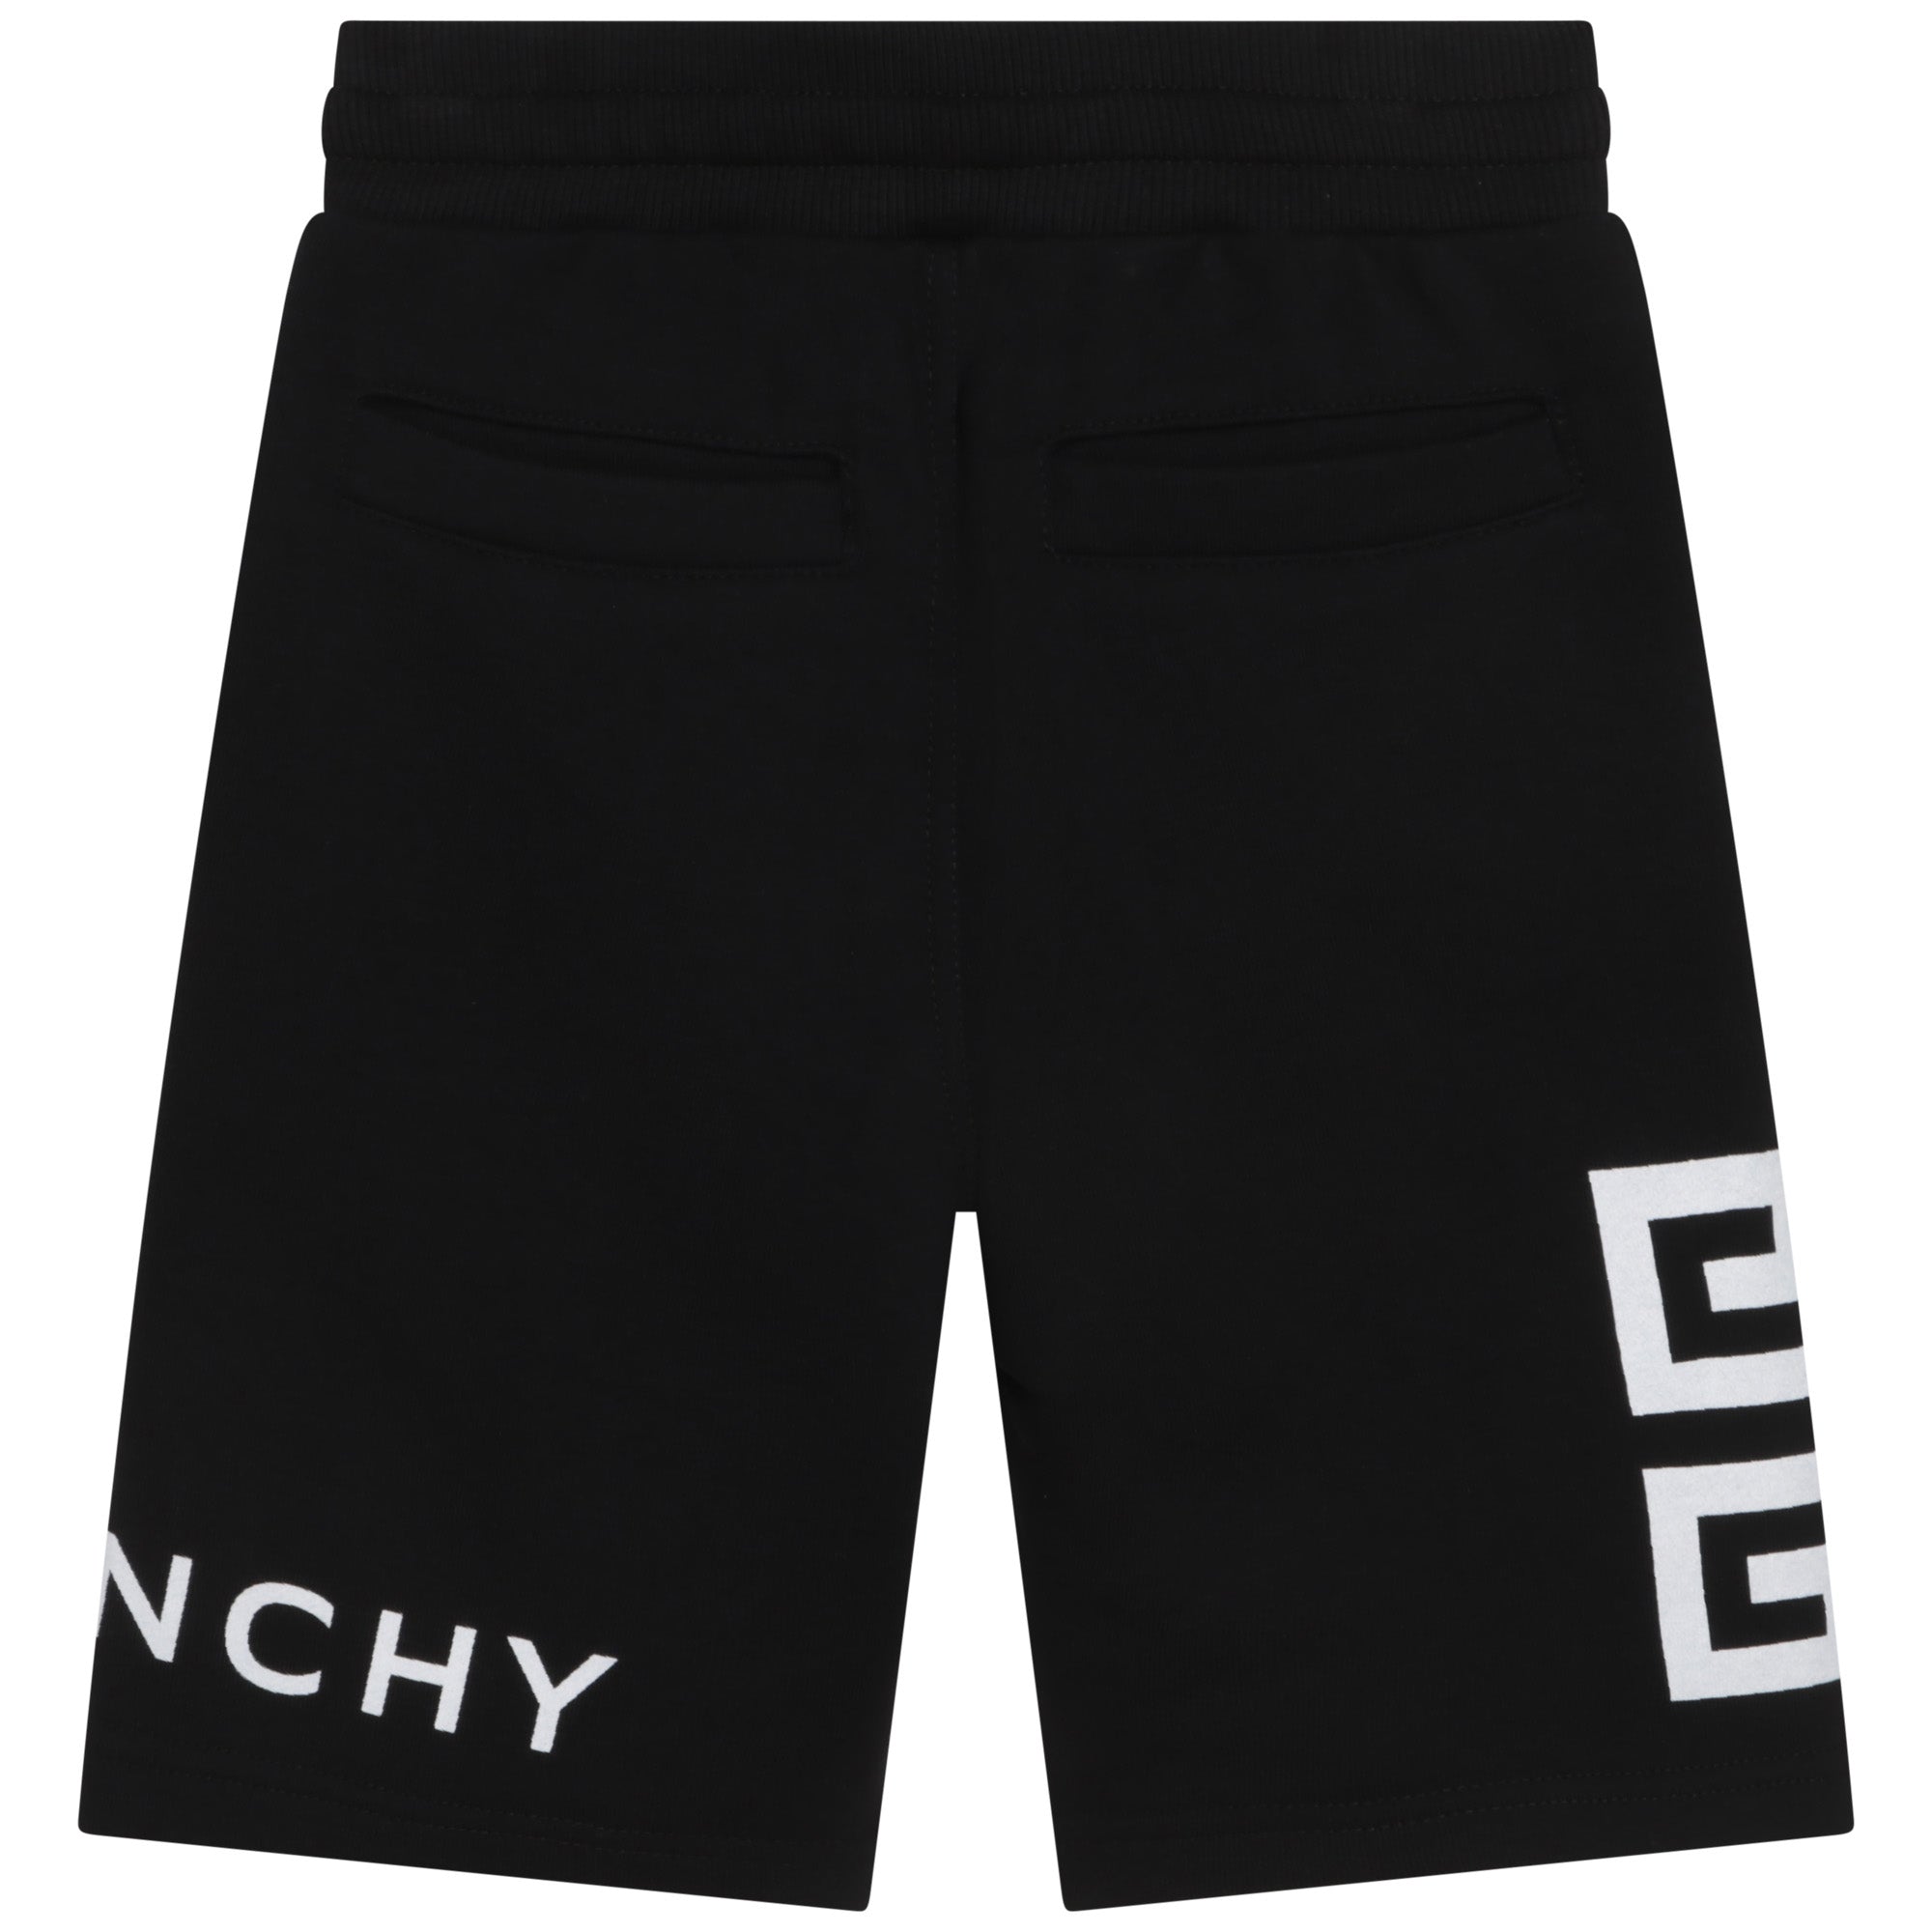 Givenchy Black Shorts